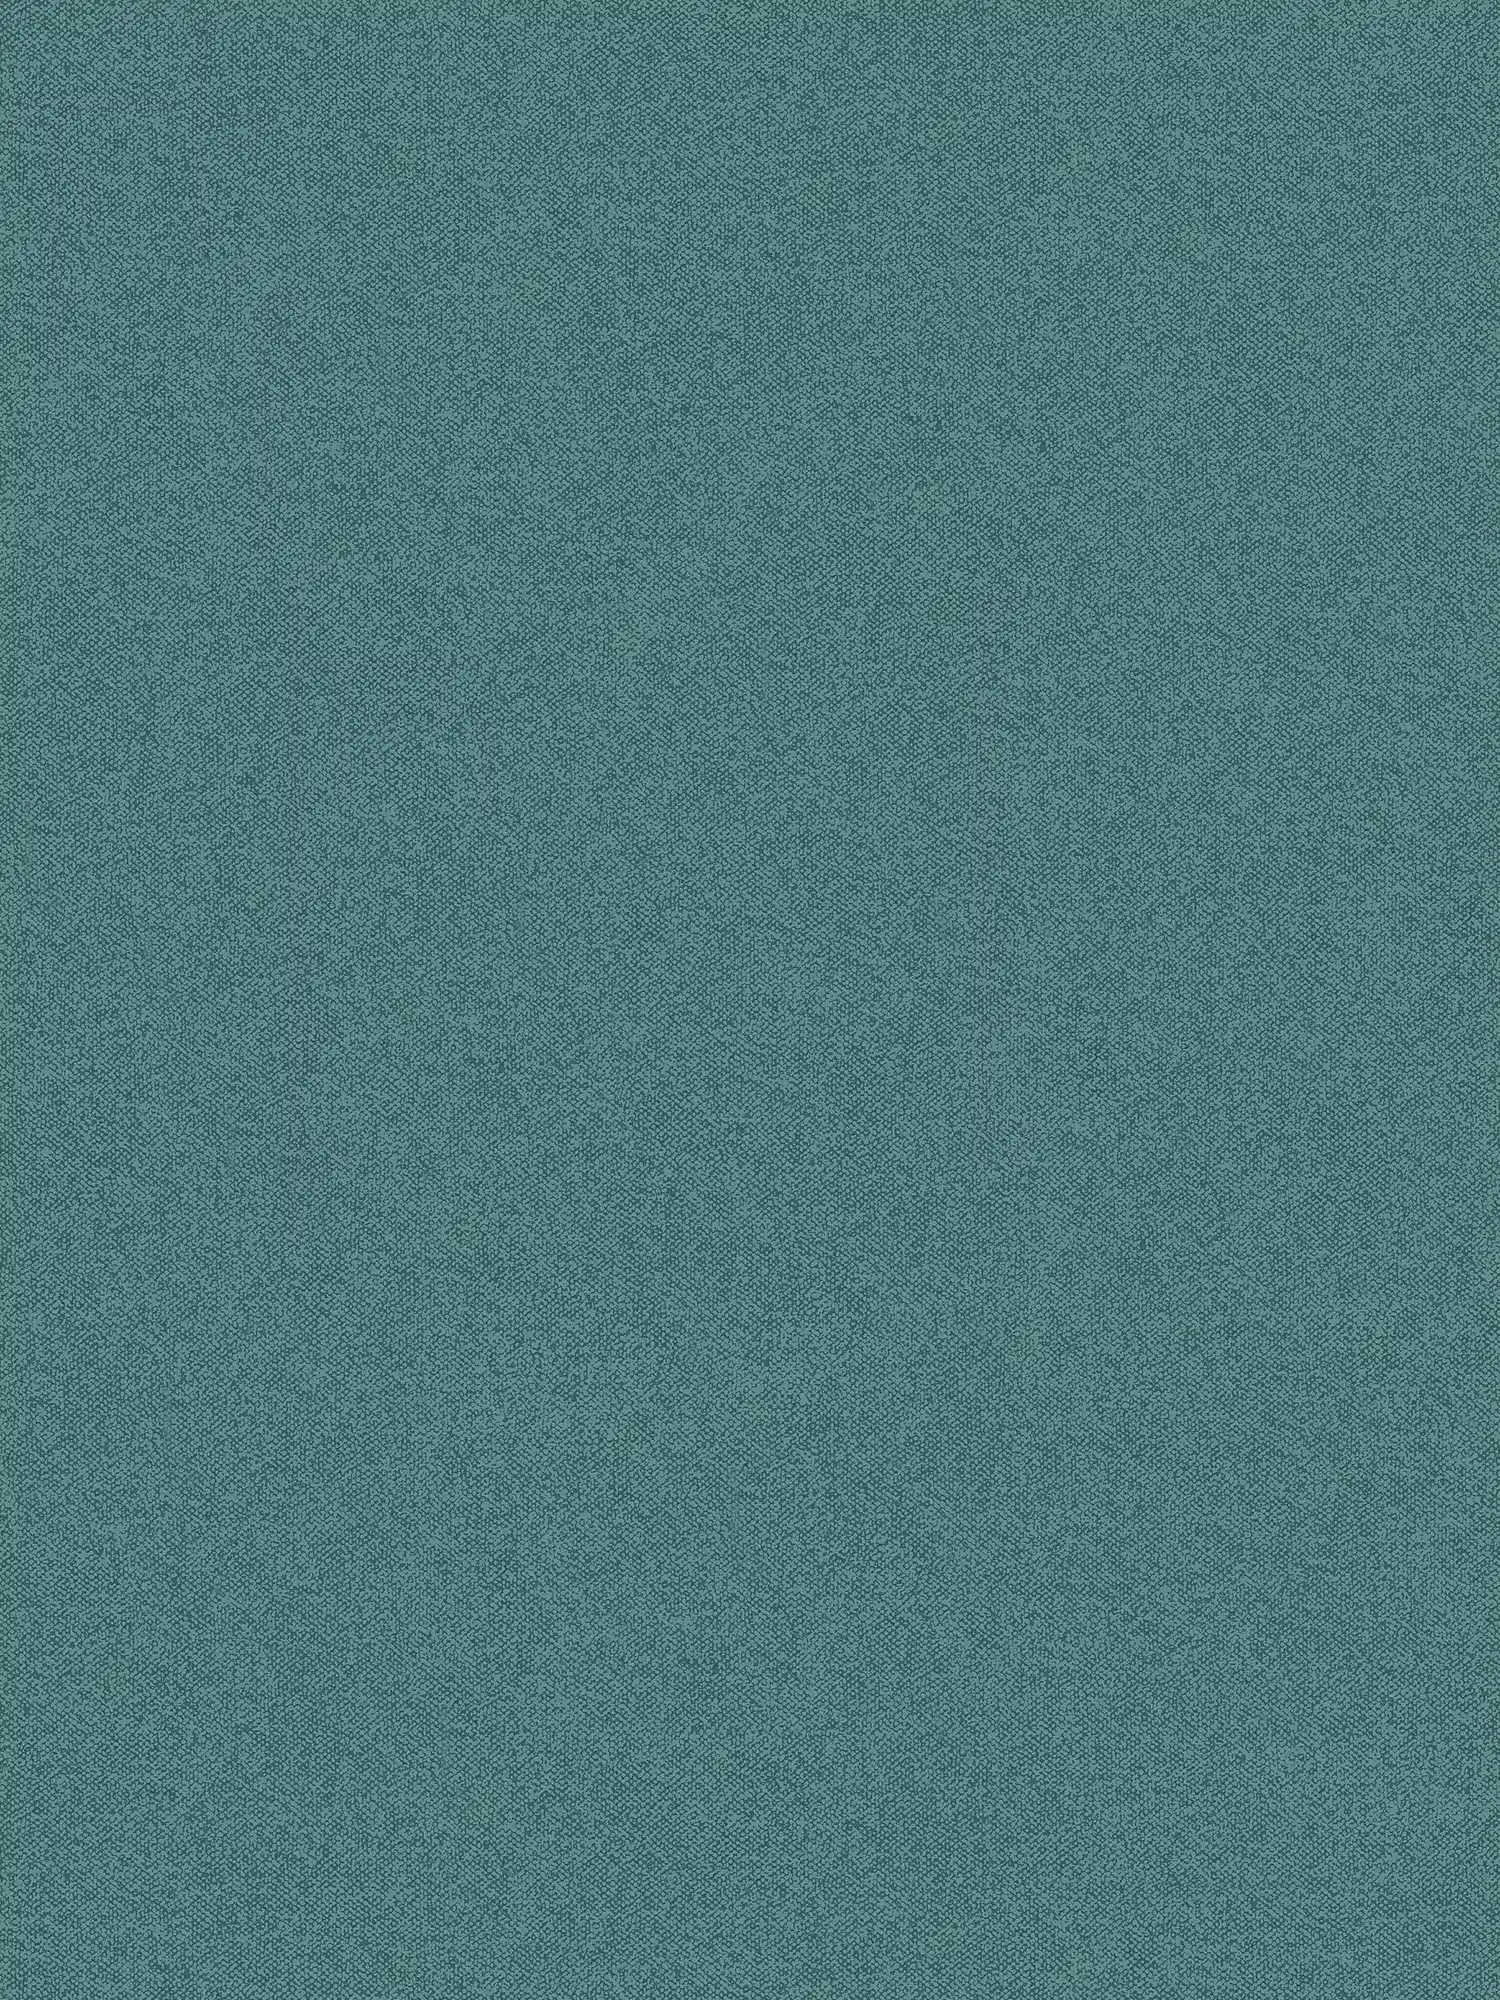 Carta da parati liscia con aspetto di lino, strutturata - verde, blu
